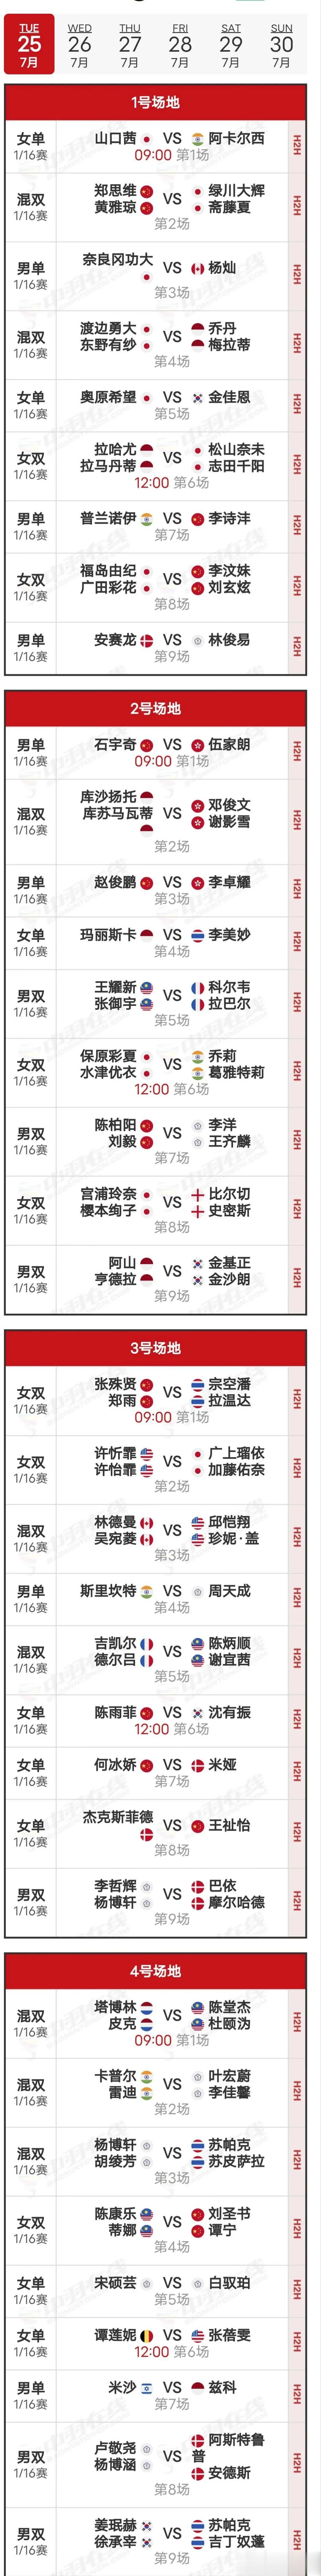  25日赛程
     比赛首日于北京时间25日9:00开赛，国羽共有11场比赛(1)